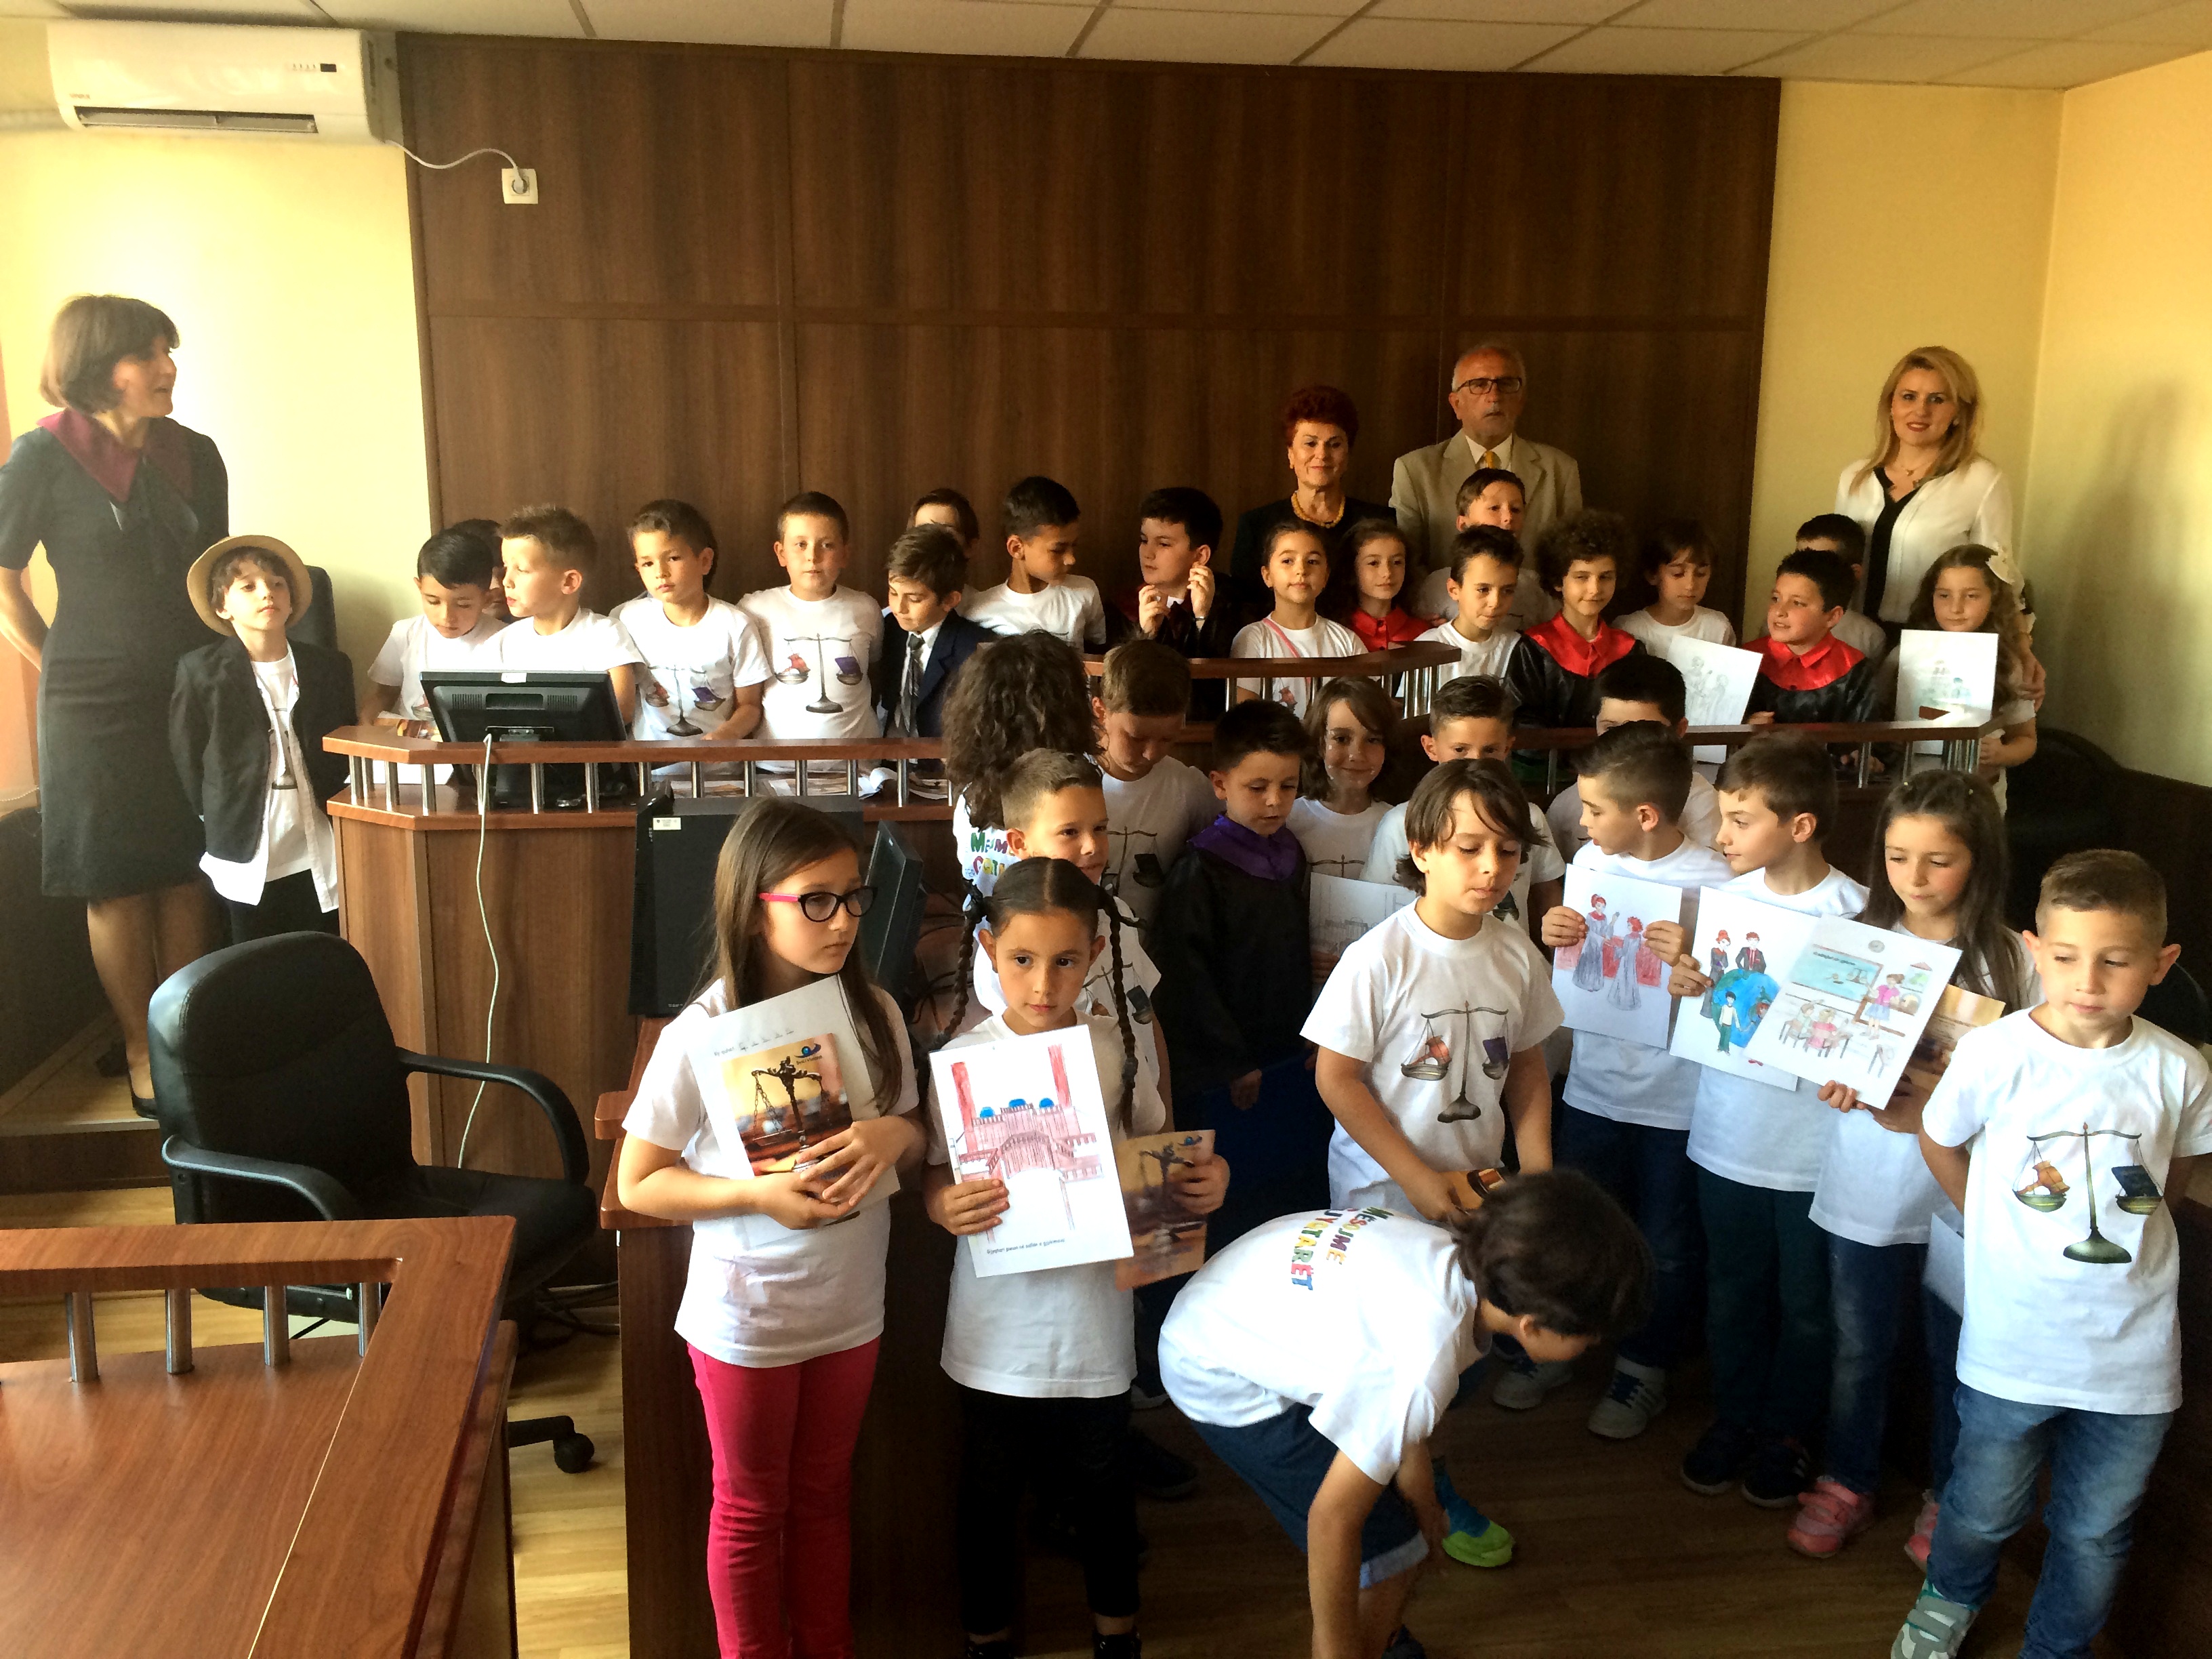 Gjykatën Themelore në Pejë e vizituan një grup nxënësish nga shkolla fillore  “Lidhja e Prizrenit” –Pejë